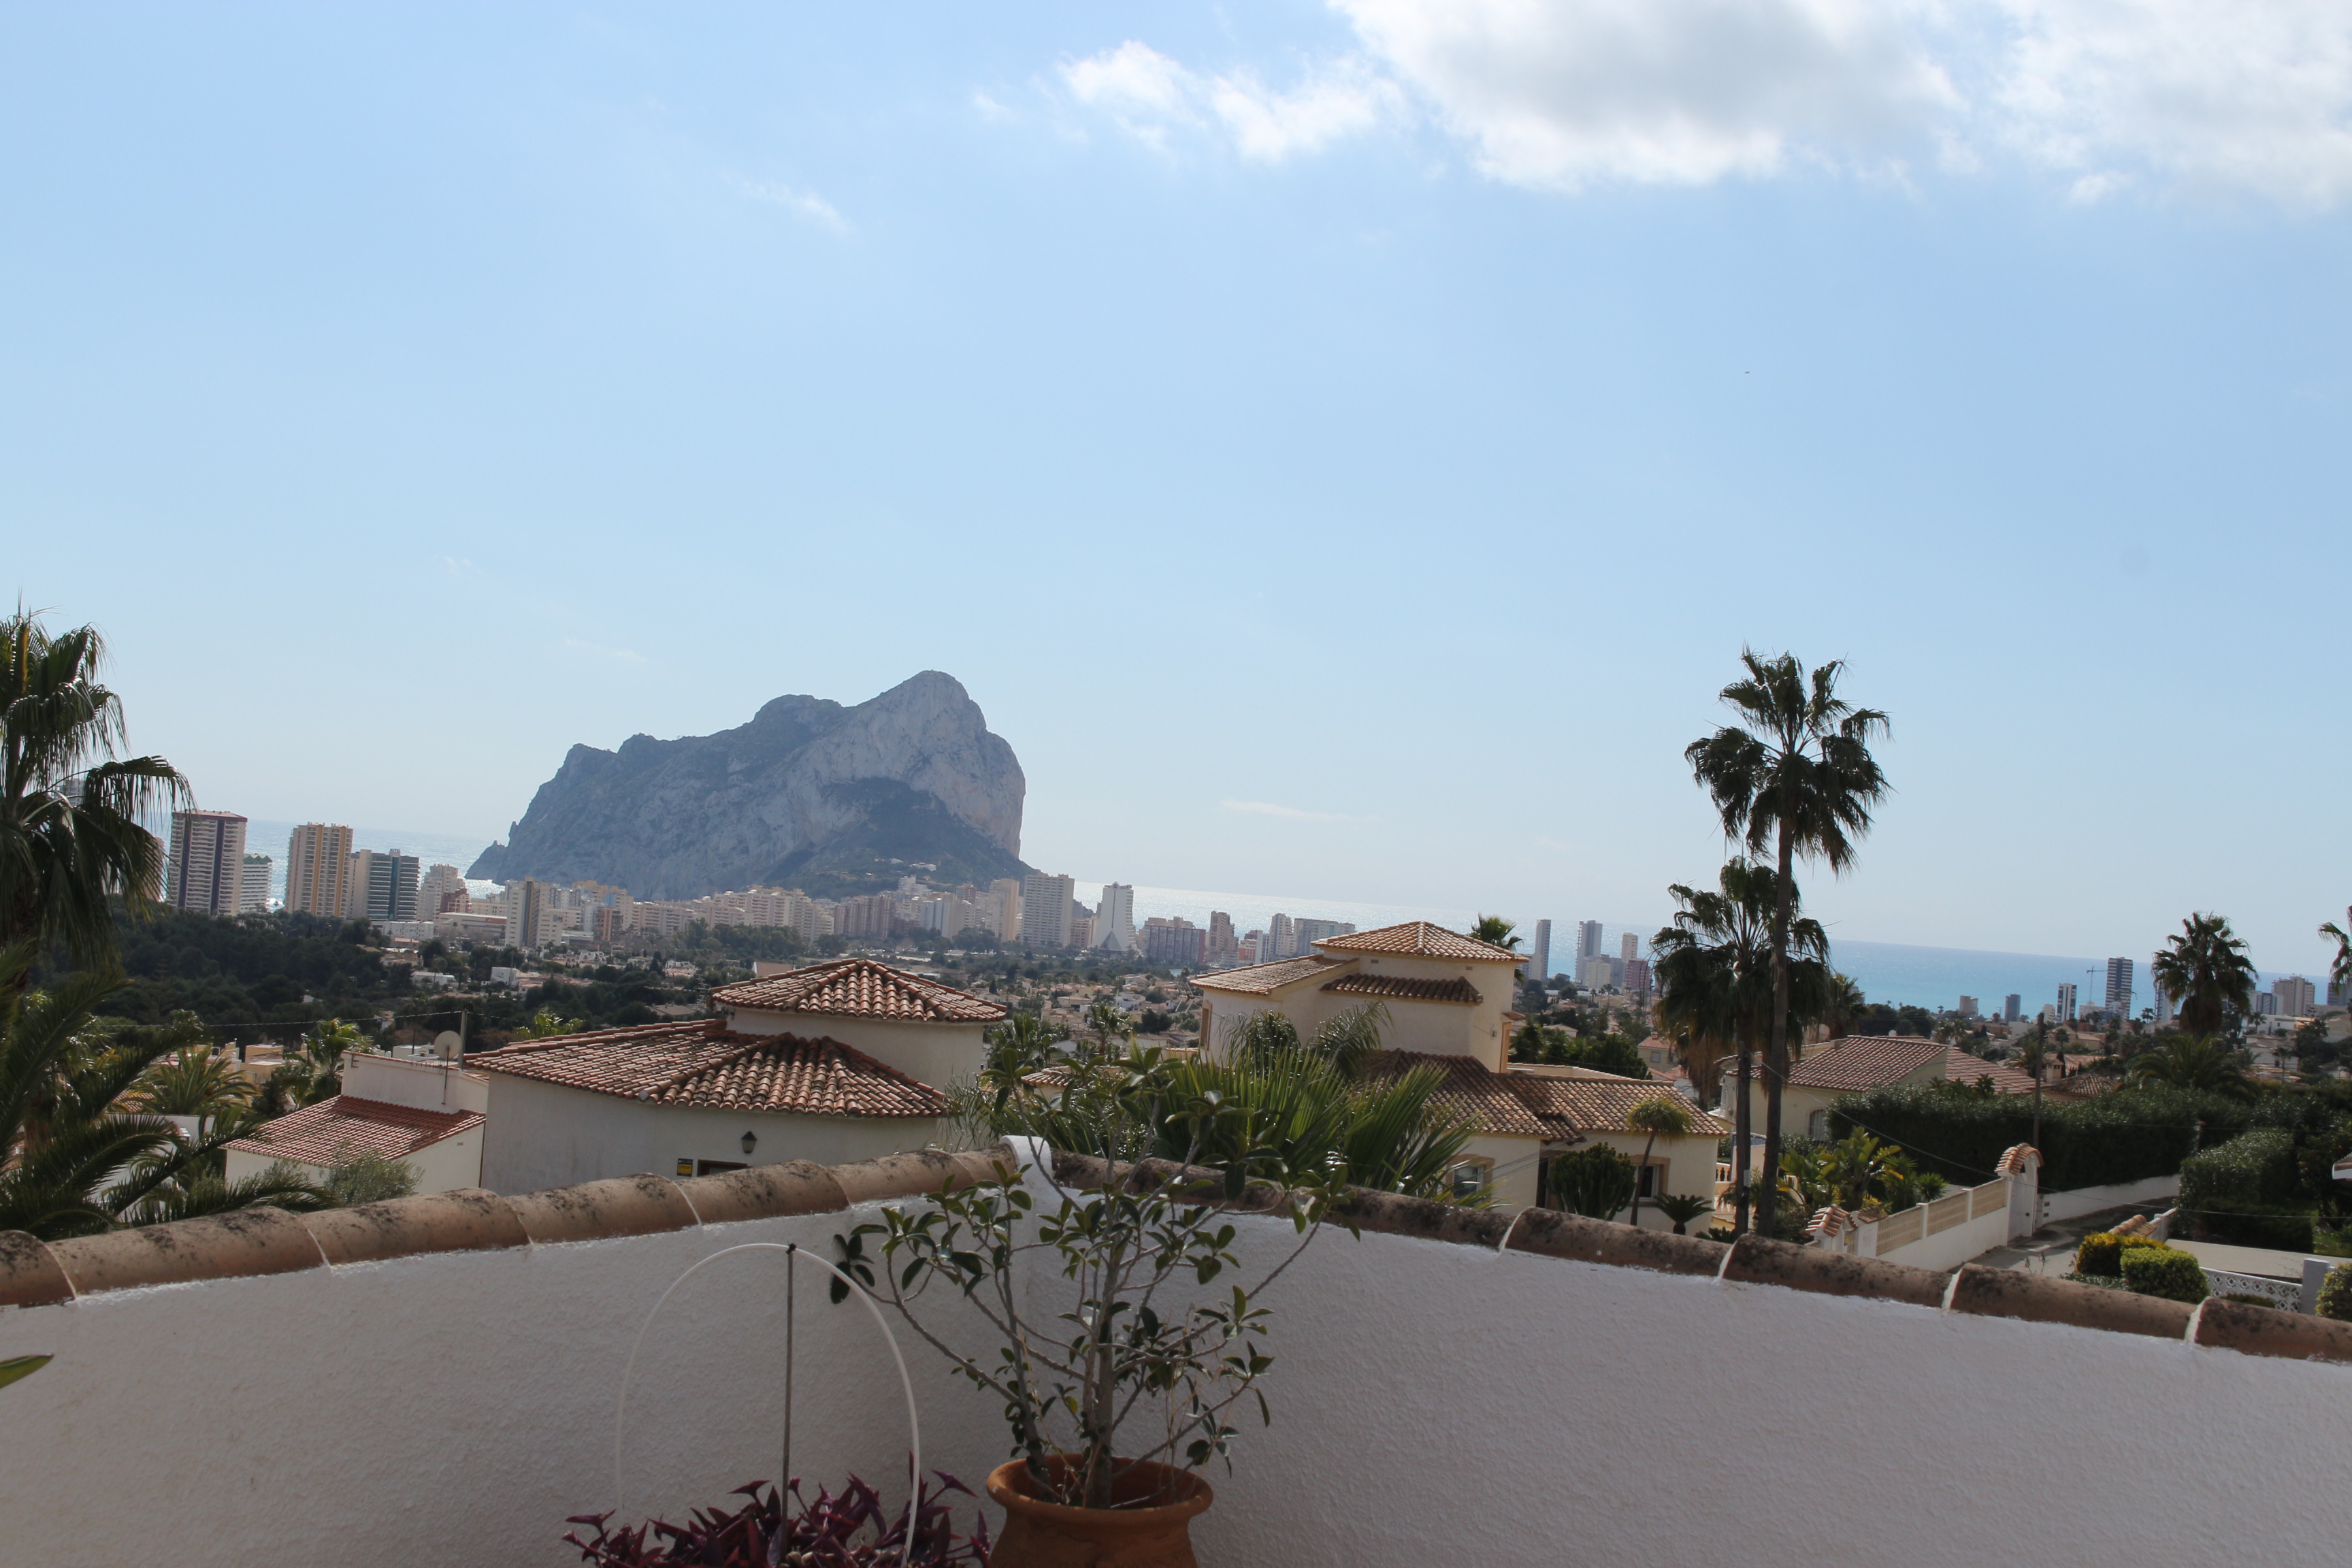 Maravillosa villa mediterránea con vistas al mar en Calpe. ¡Un sueño hecho realidad!